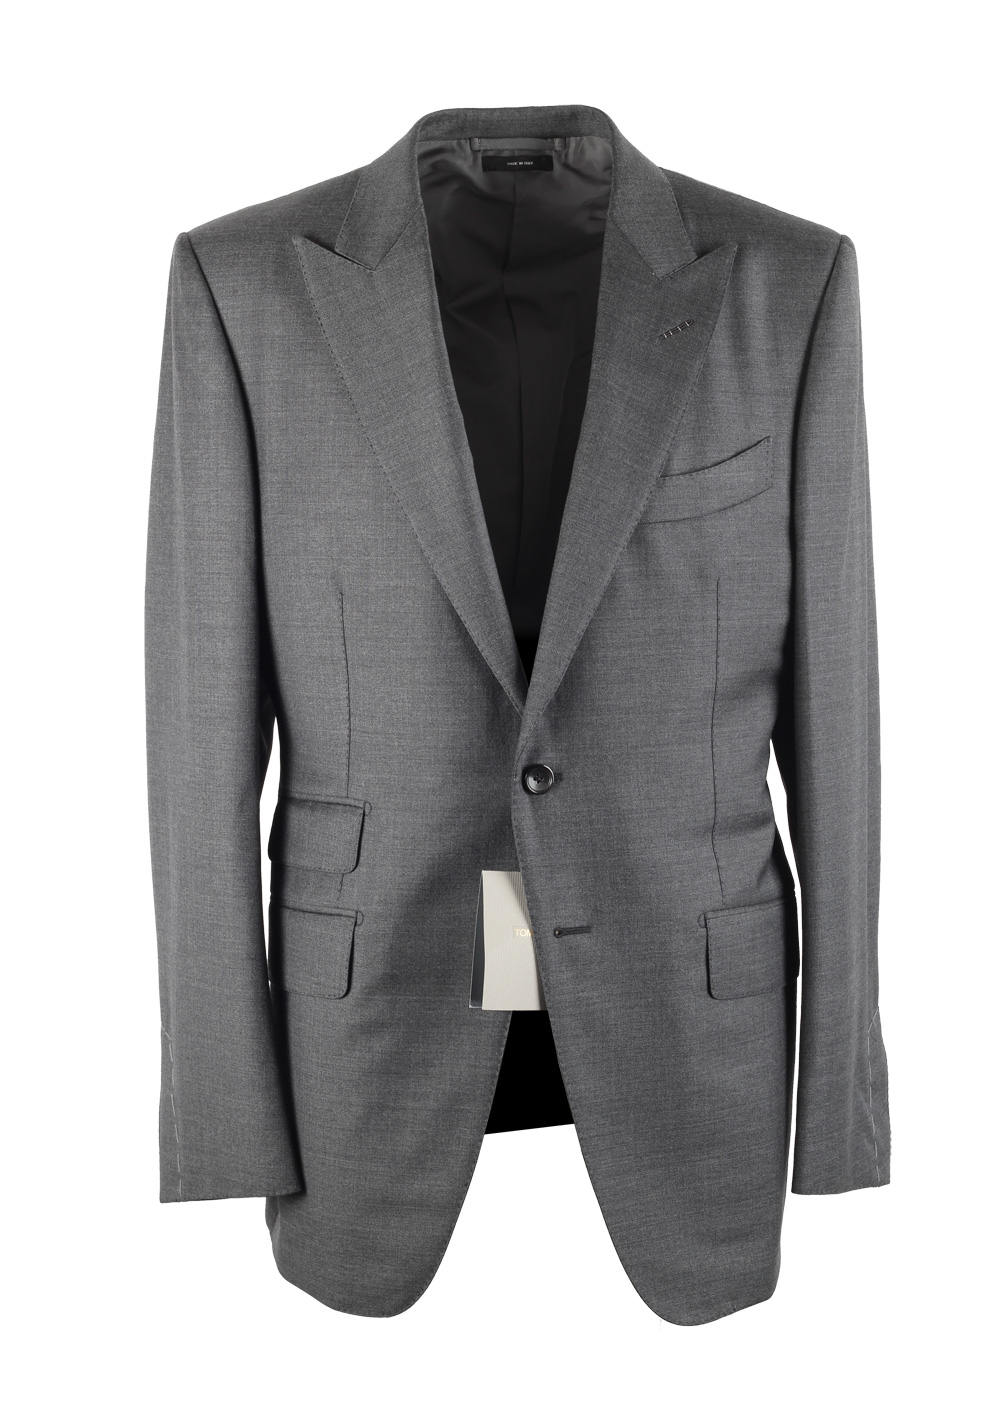 engagement kultur at tilbagetrække TOM FORD O'Connor Solid Gray Suit | Costume Limité